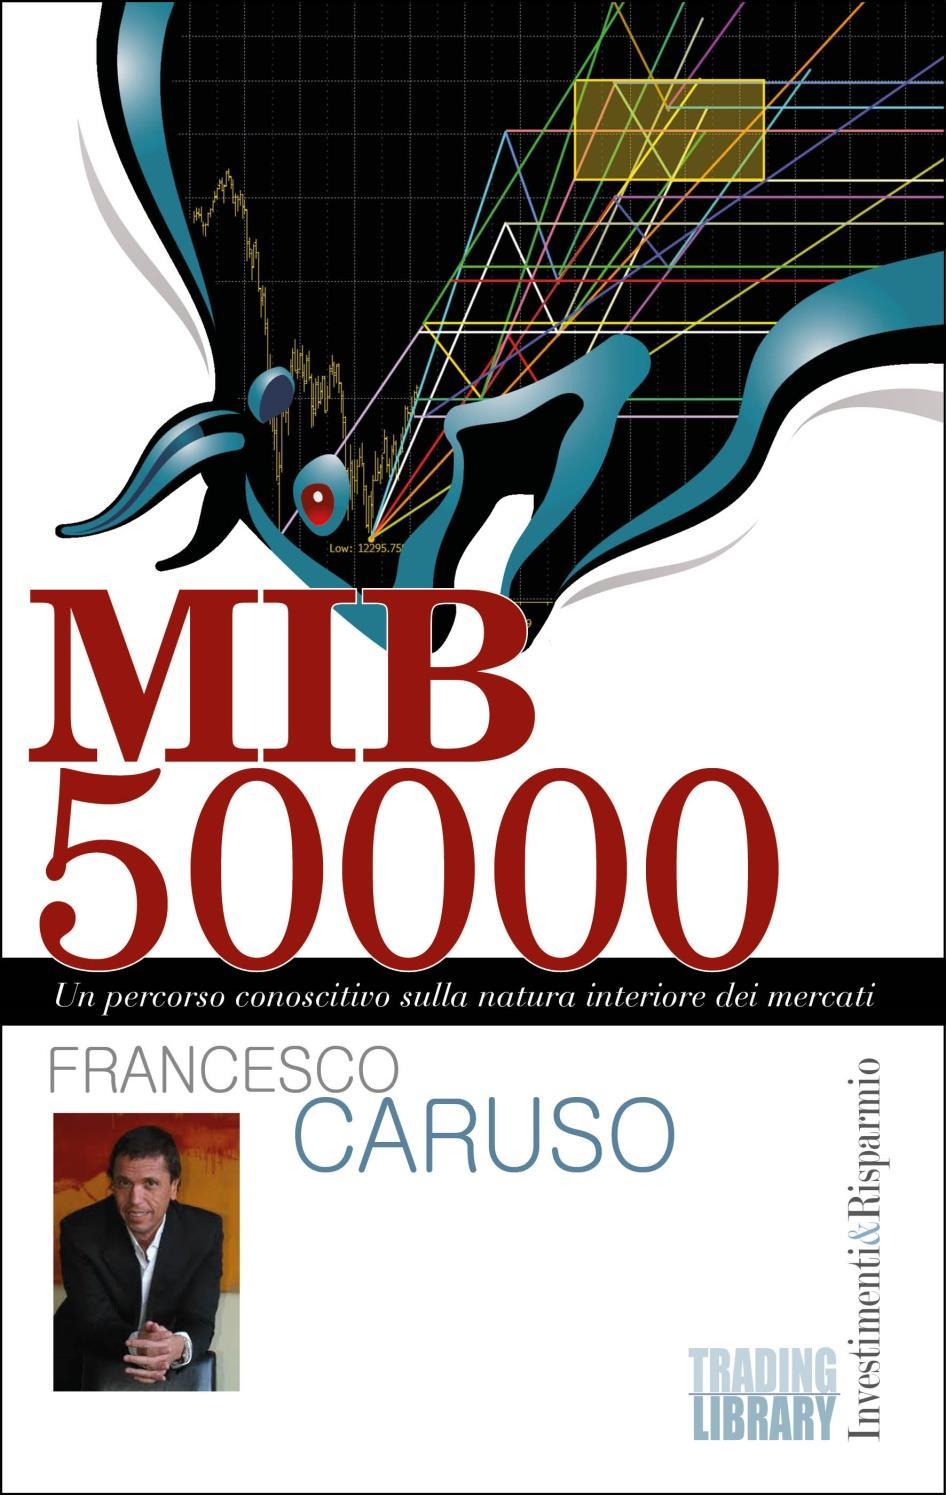 E disponibile in pre-selling il nuovo libro di Francesco Caruso "MIB 50000 - Un percorso conoscitivo sulla natura interiore dei mercati", in uscita il 22 Maggio 2014.